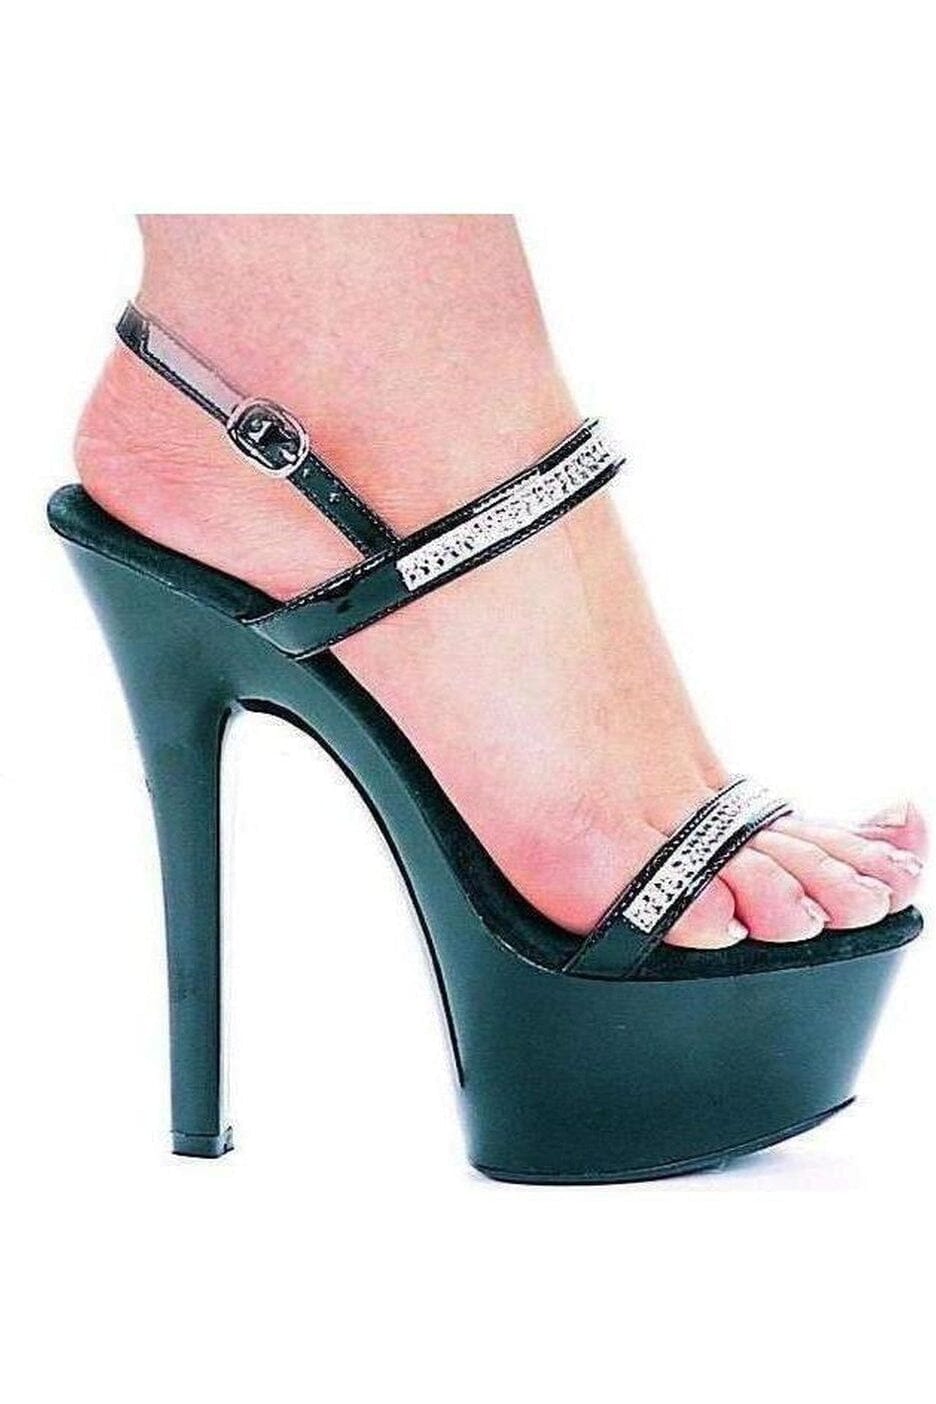 601-DIAMOND Platform Sandal | Black Patent-Ellie Shoes-Black-Sandals-SEXYSHOES.COM